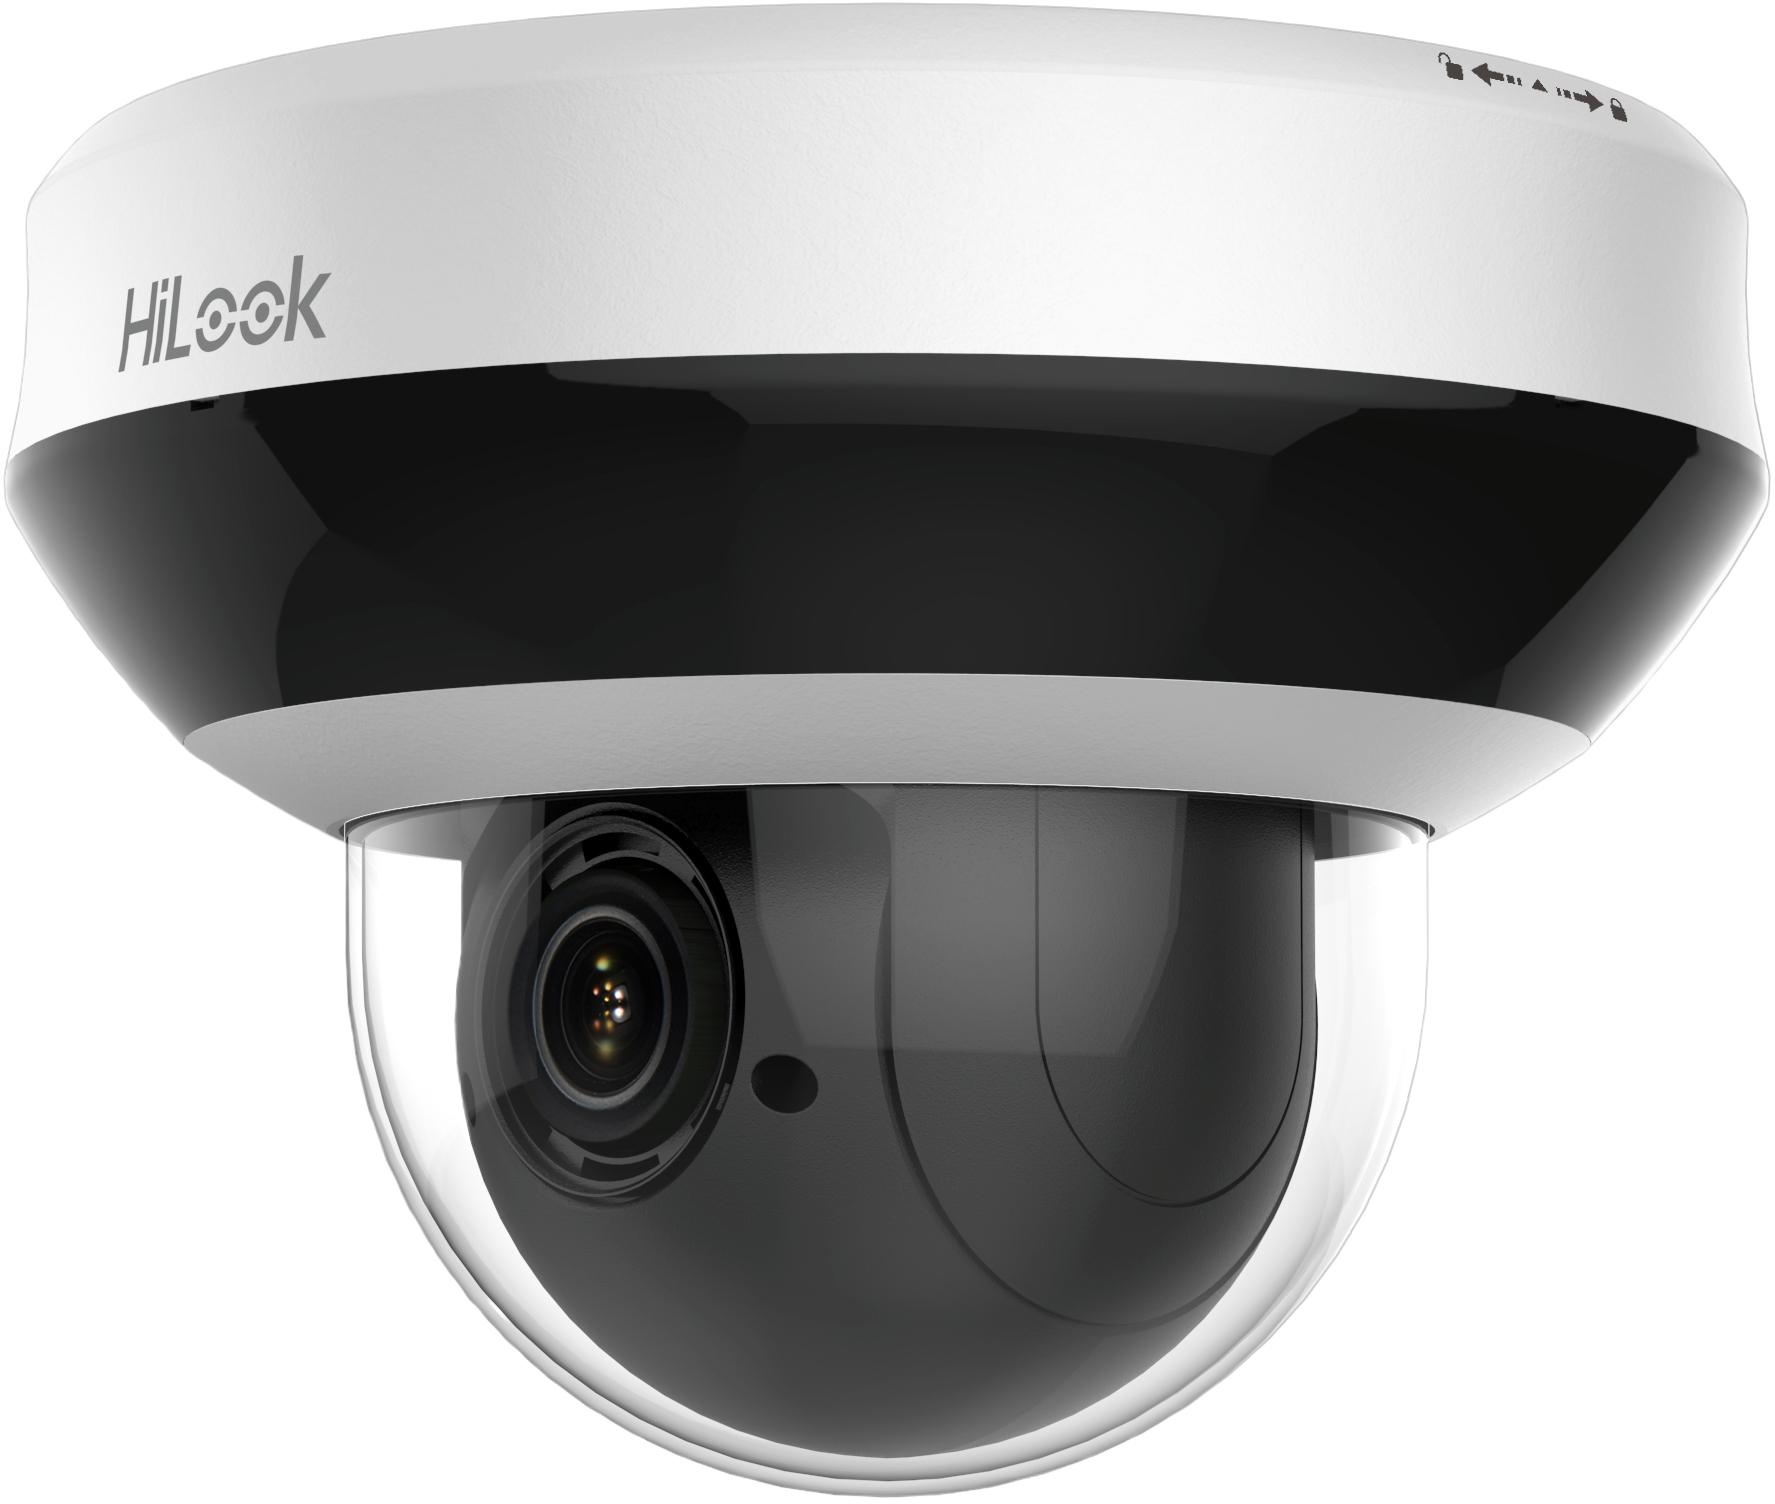 Obrotowa kamera monitorująca IP PTZ 4MPx HiLook by Hikvision ze slotem na kartę pamięci microSD do 256GB